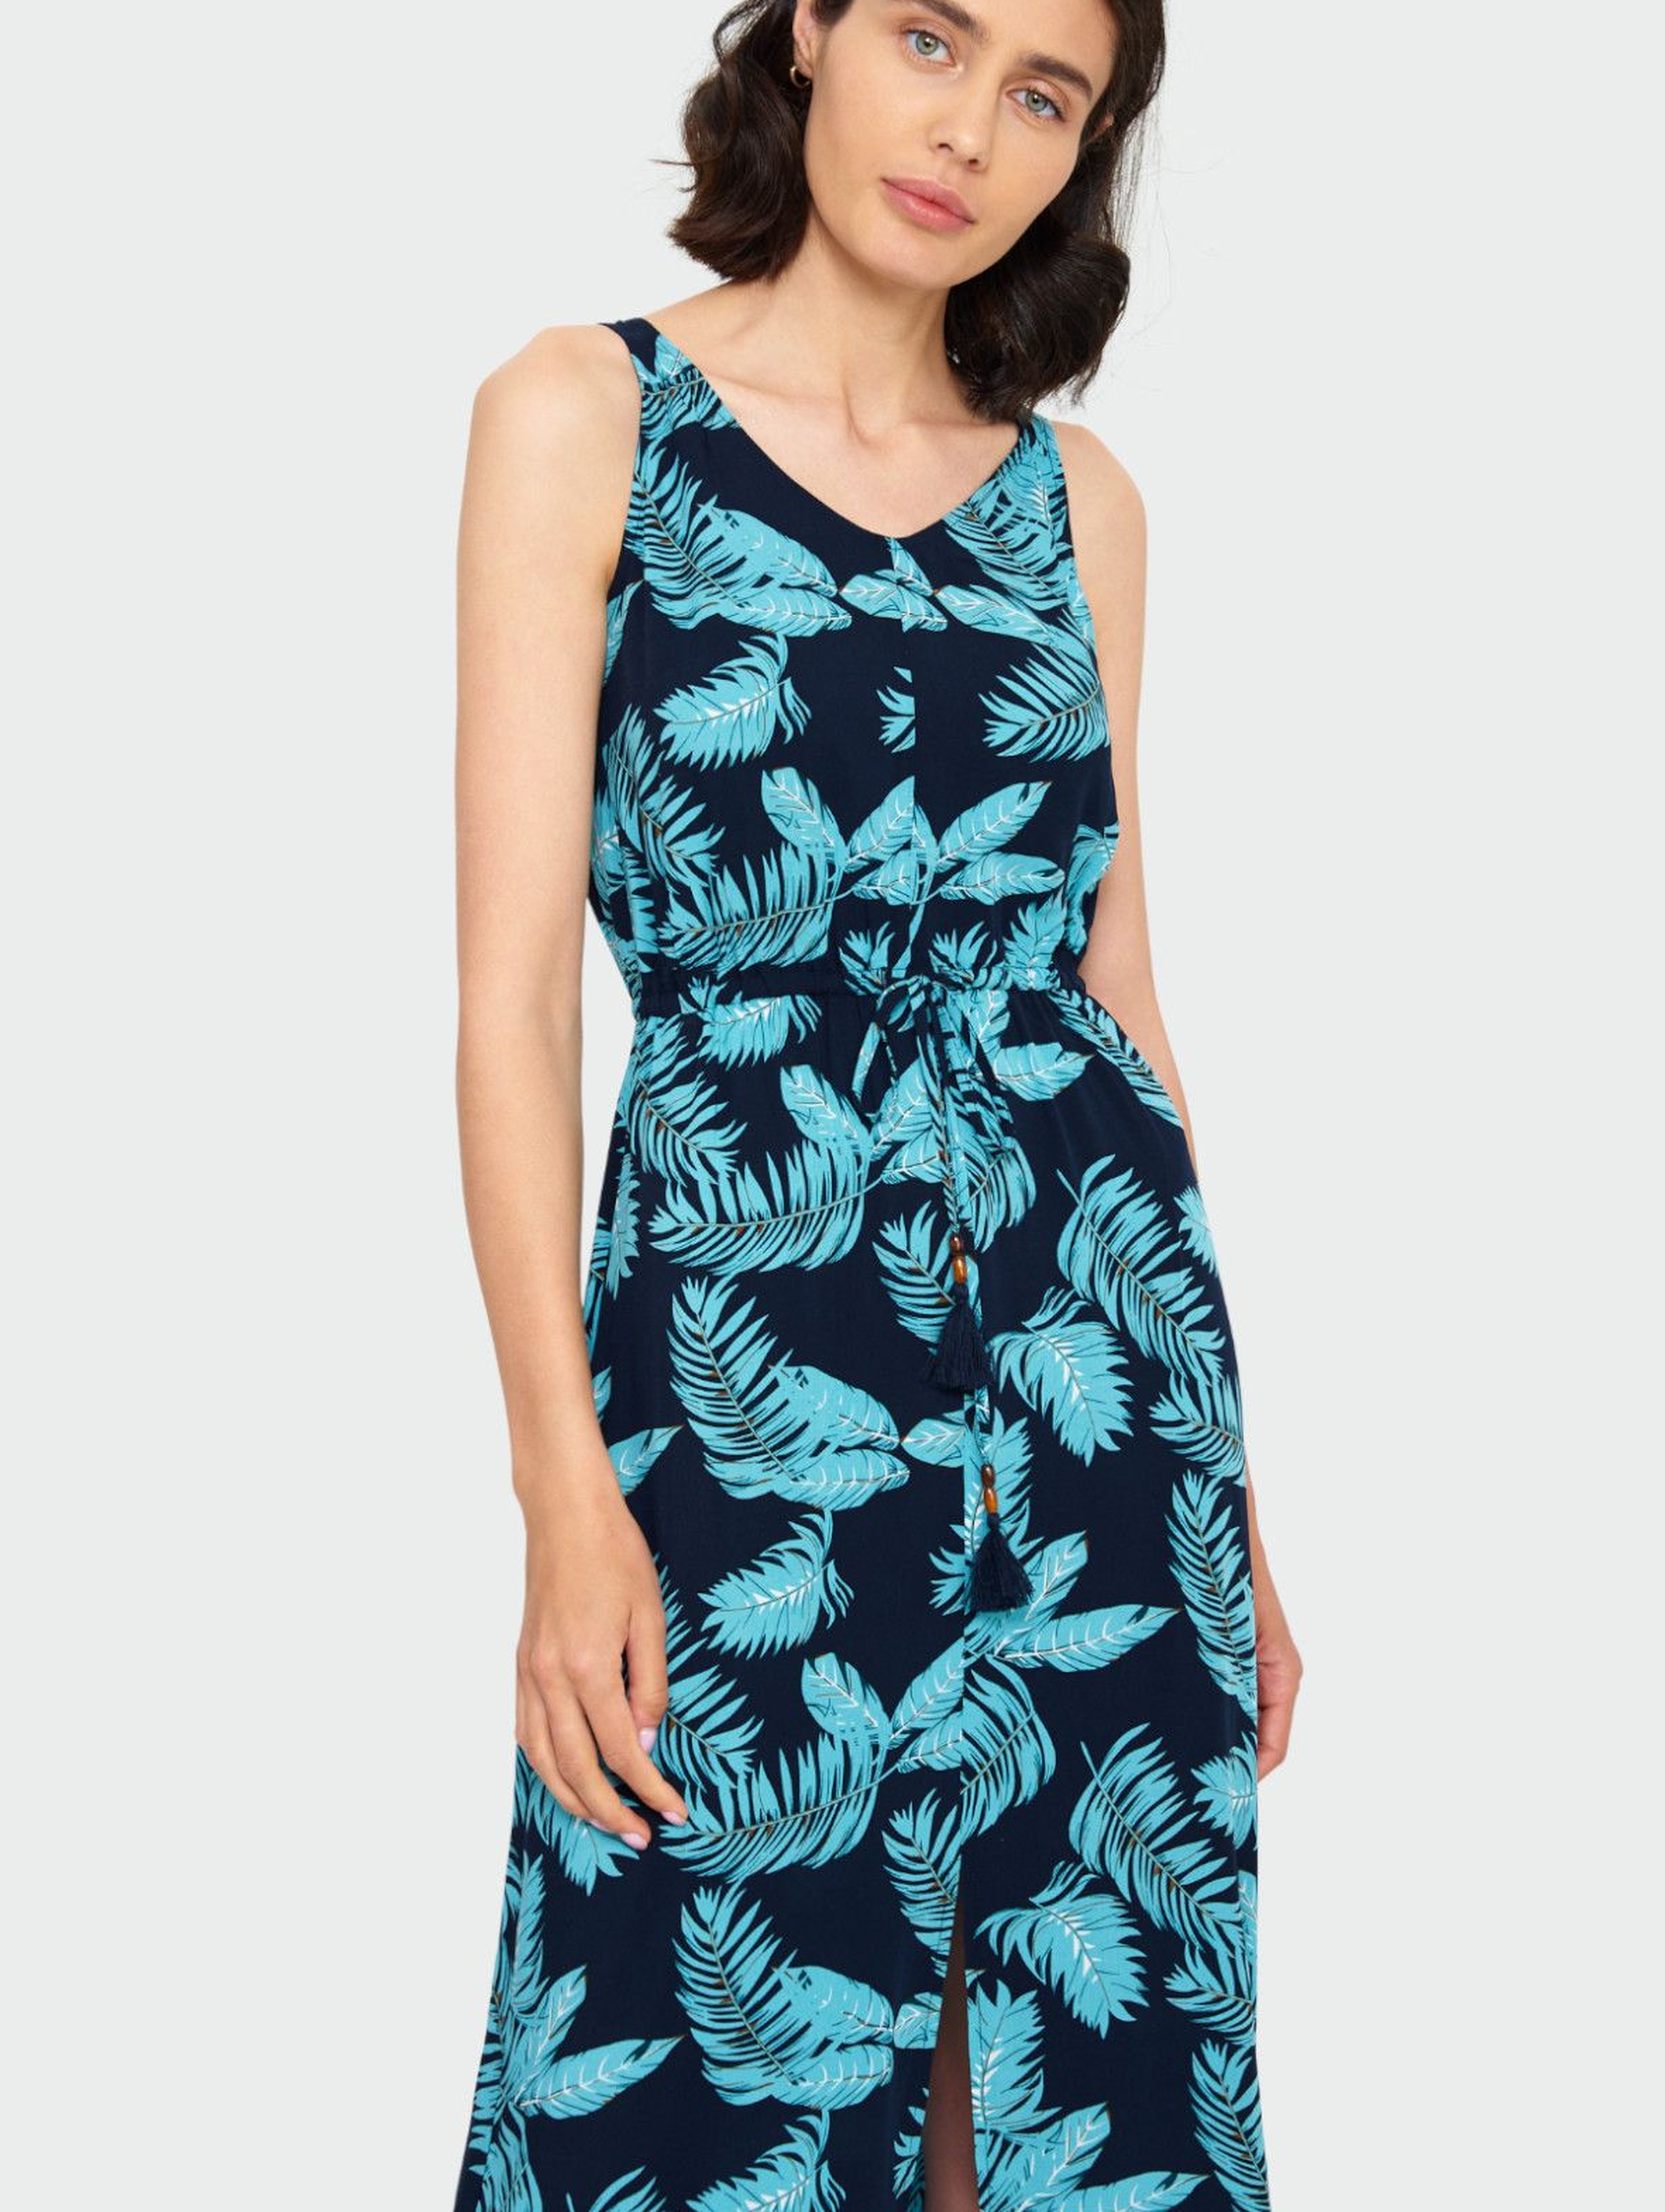 Granatowa długa sukienka damska z wiskozy - wzór liście